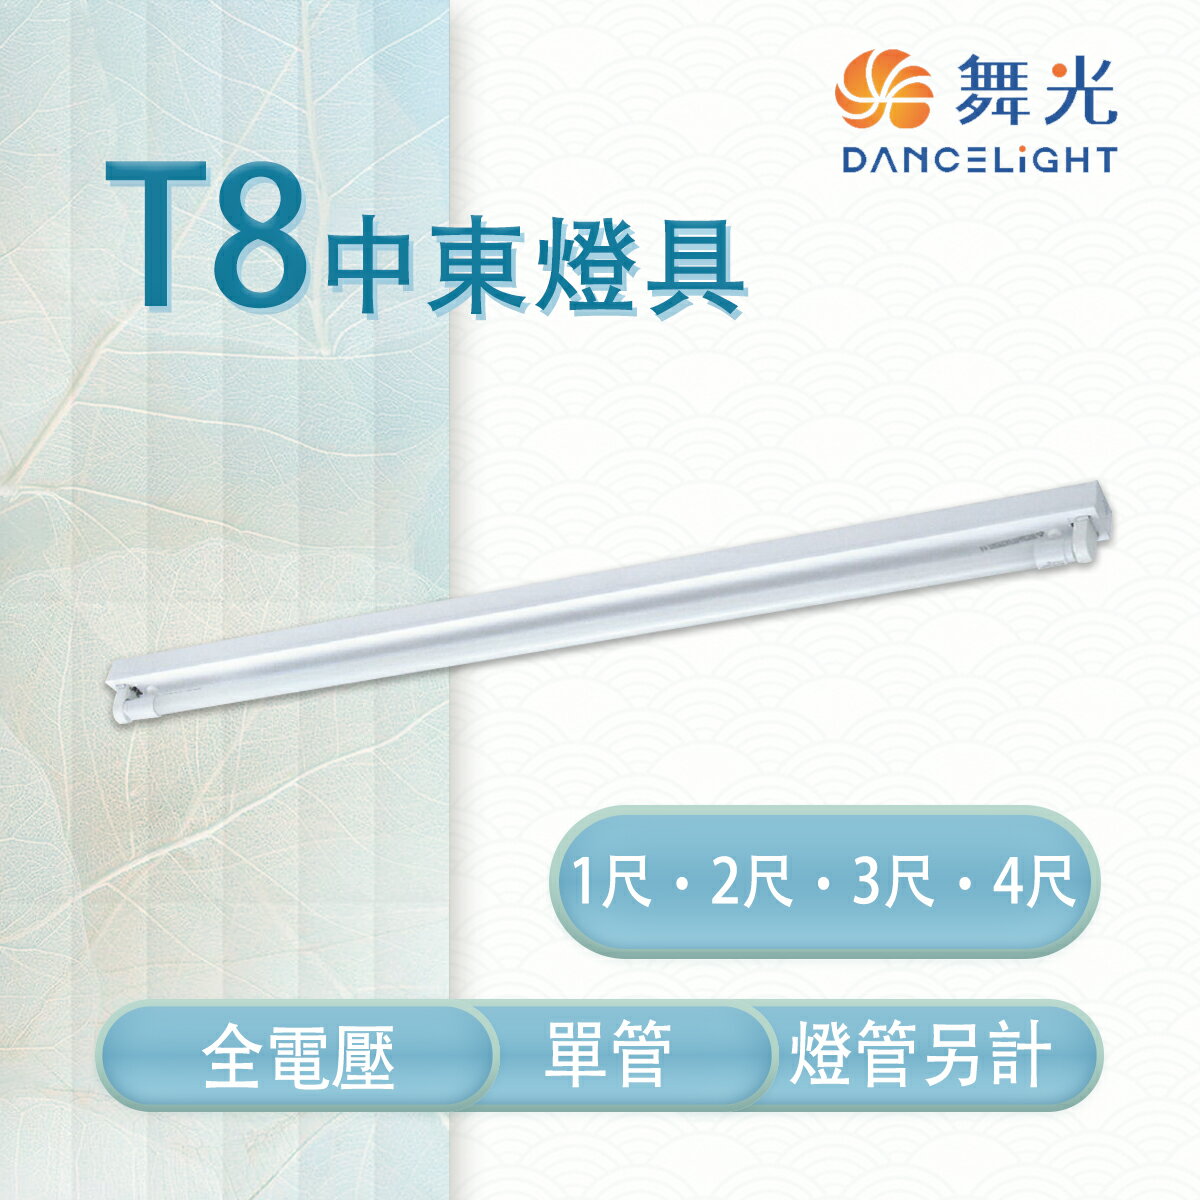 舞光 舞光 LED T8 1/2/3/4尺 中東燈具 單管 冷軋鋼板 空台 燈管另計 【永光照明】MT2-LED-41441/3/2/1